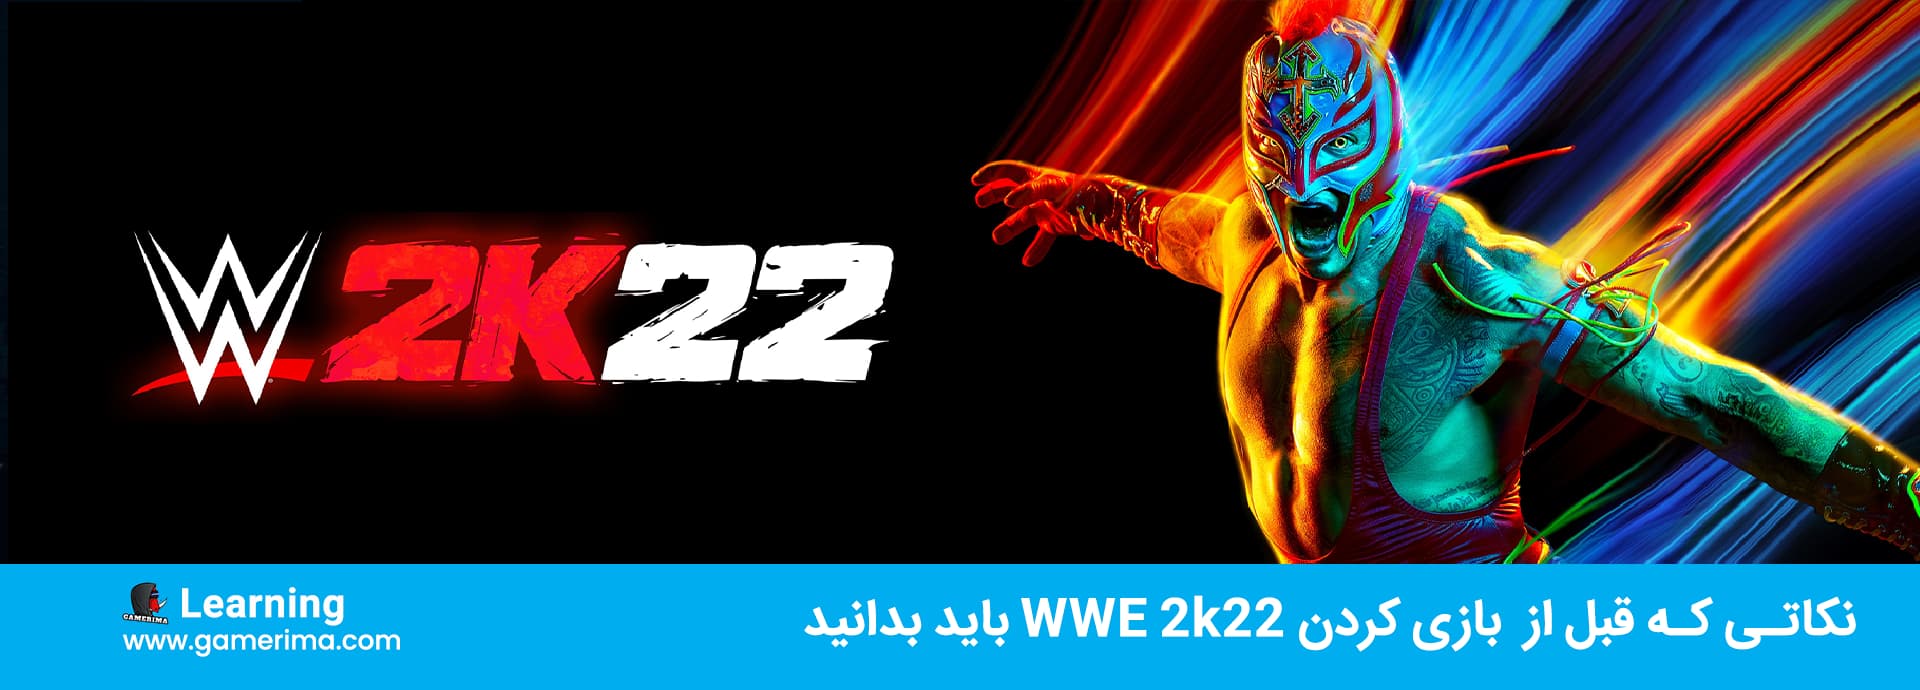 چهار نکته در مورد WWE 2K22 که قبل از تجربه باید بدانید